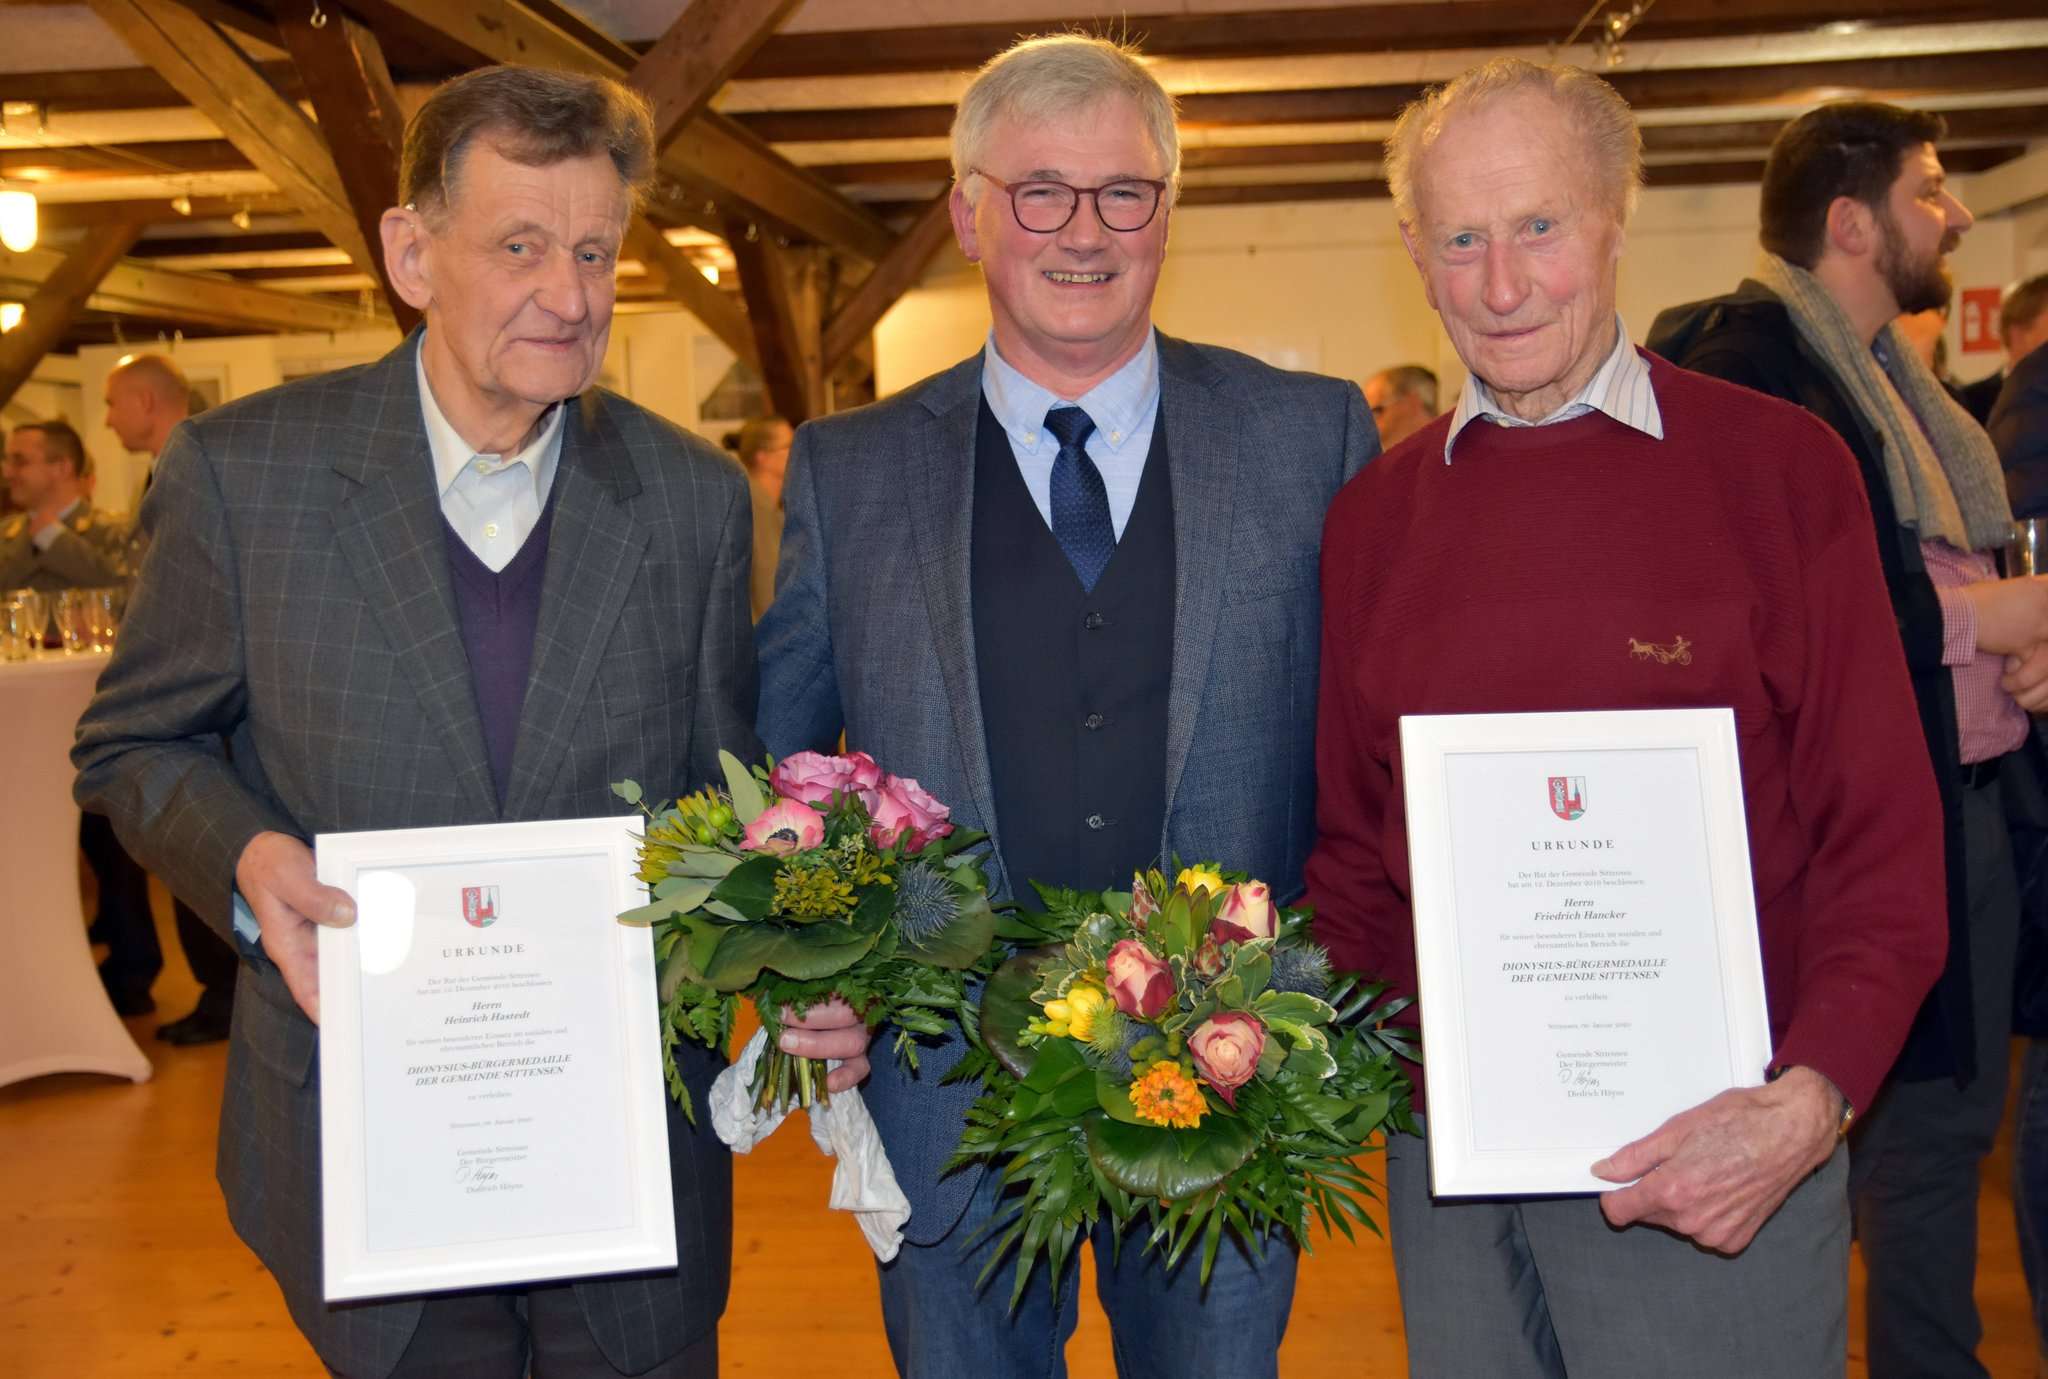 Bürgermeister Diedrich Höyns (Mitte) mit den neuen Trägern der Dionysius-Medaille, Friedel Hancker (rechts) und Heiner Hastedt. Foto: Heidrun Meyer